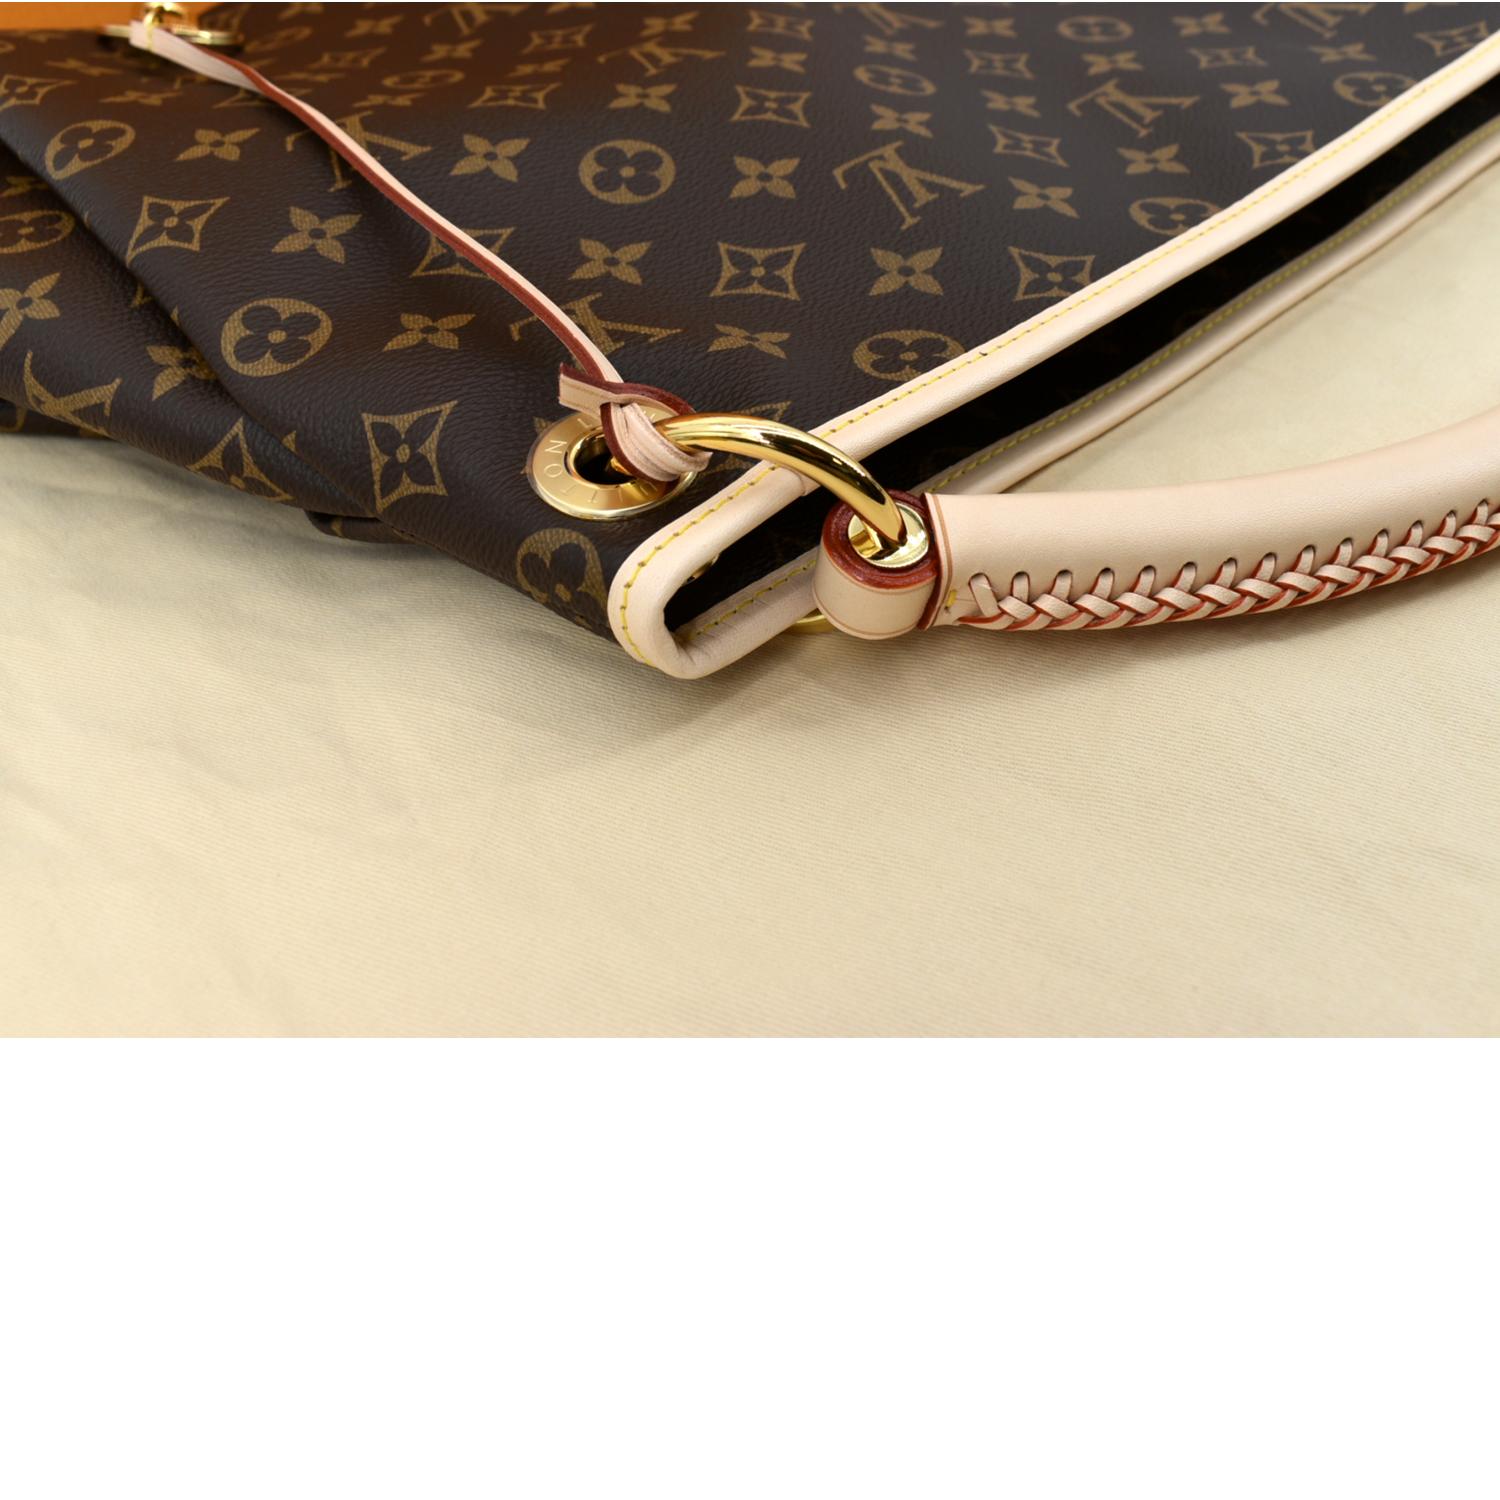 Louis Vuitton Pochette Accessoires NM (Microchip), Luxury, Bags